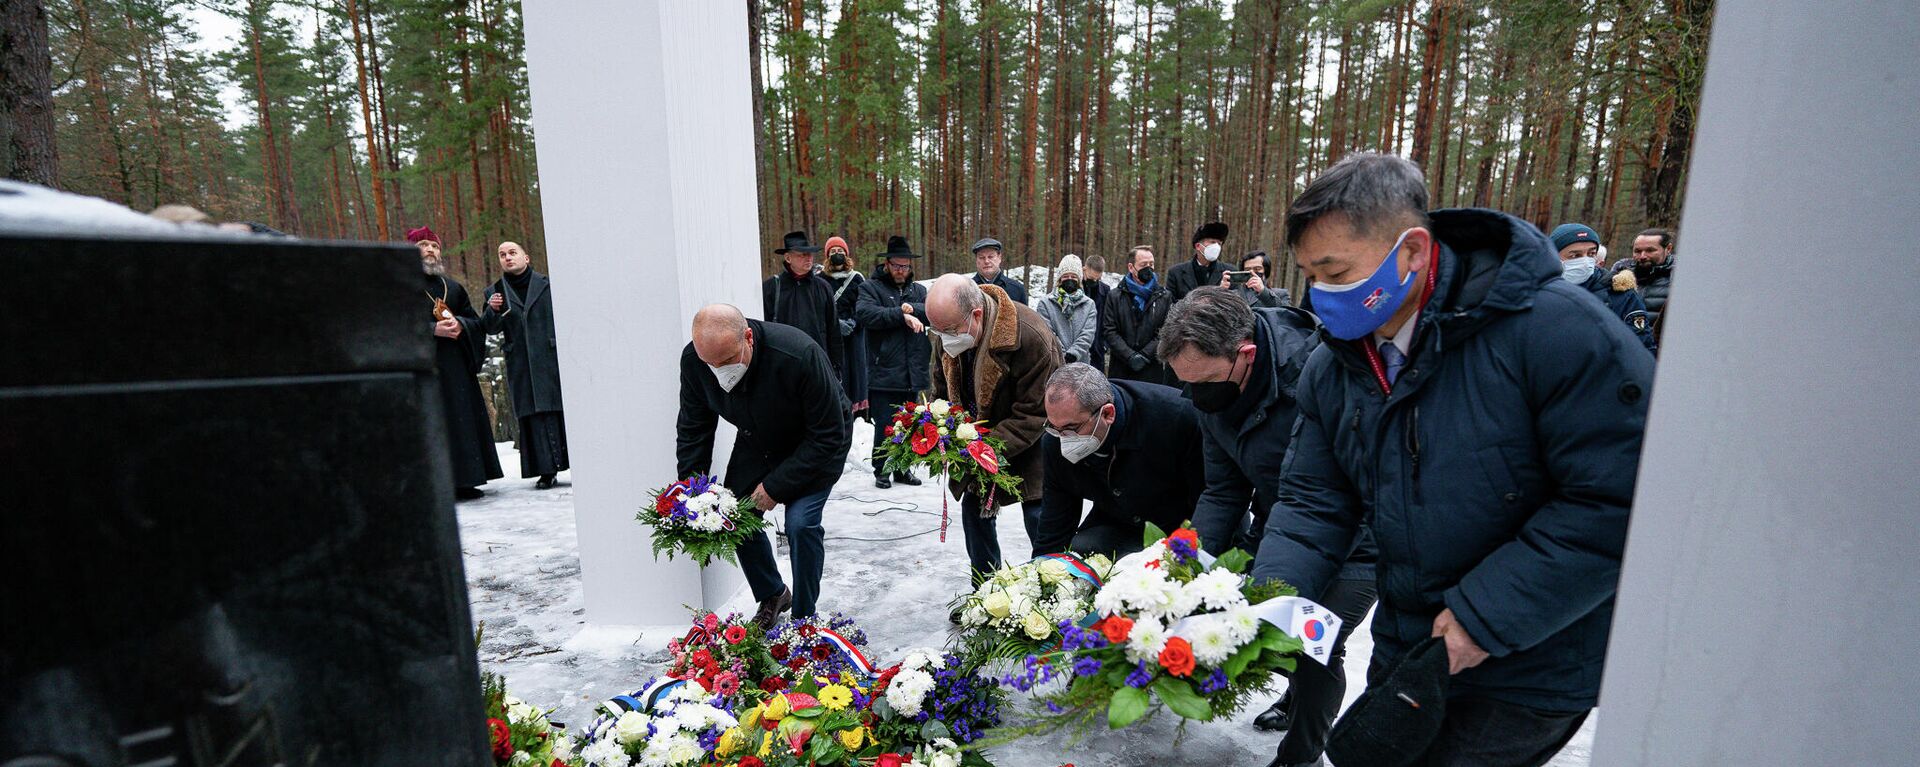 Церемония возложения цветов к мемориалу в Бикерниекском лесу, на месте массового расстрела евреев в 1941-1944 годах, в Международный день памяти жертв Холокоста - Sputnik Латвия, 1920, 28.01.2022